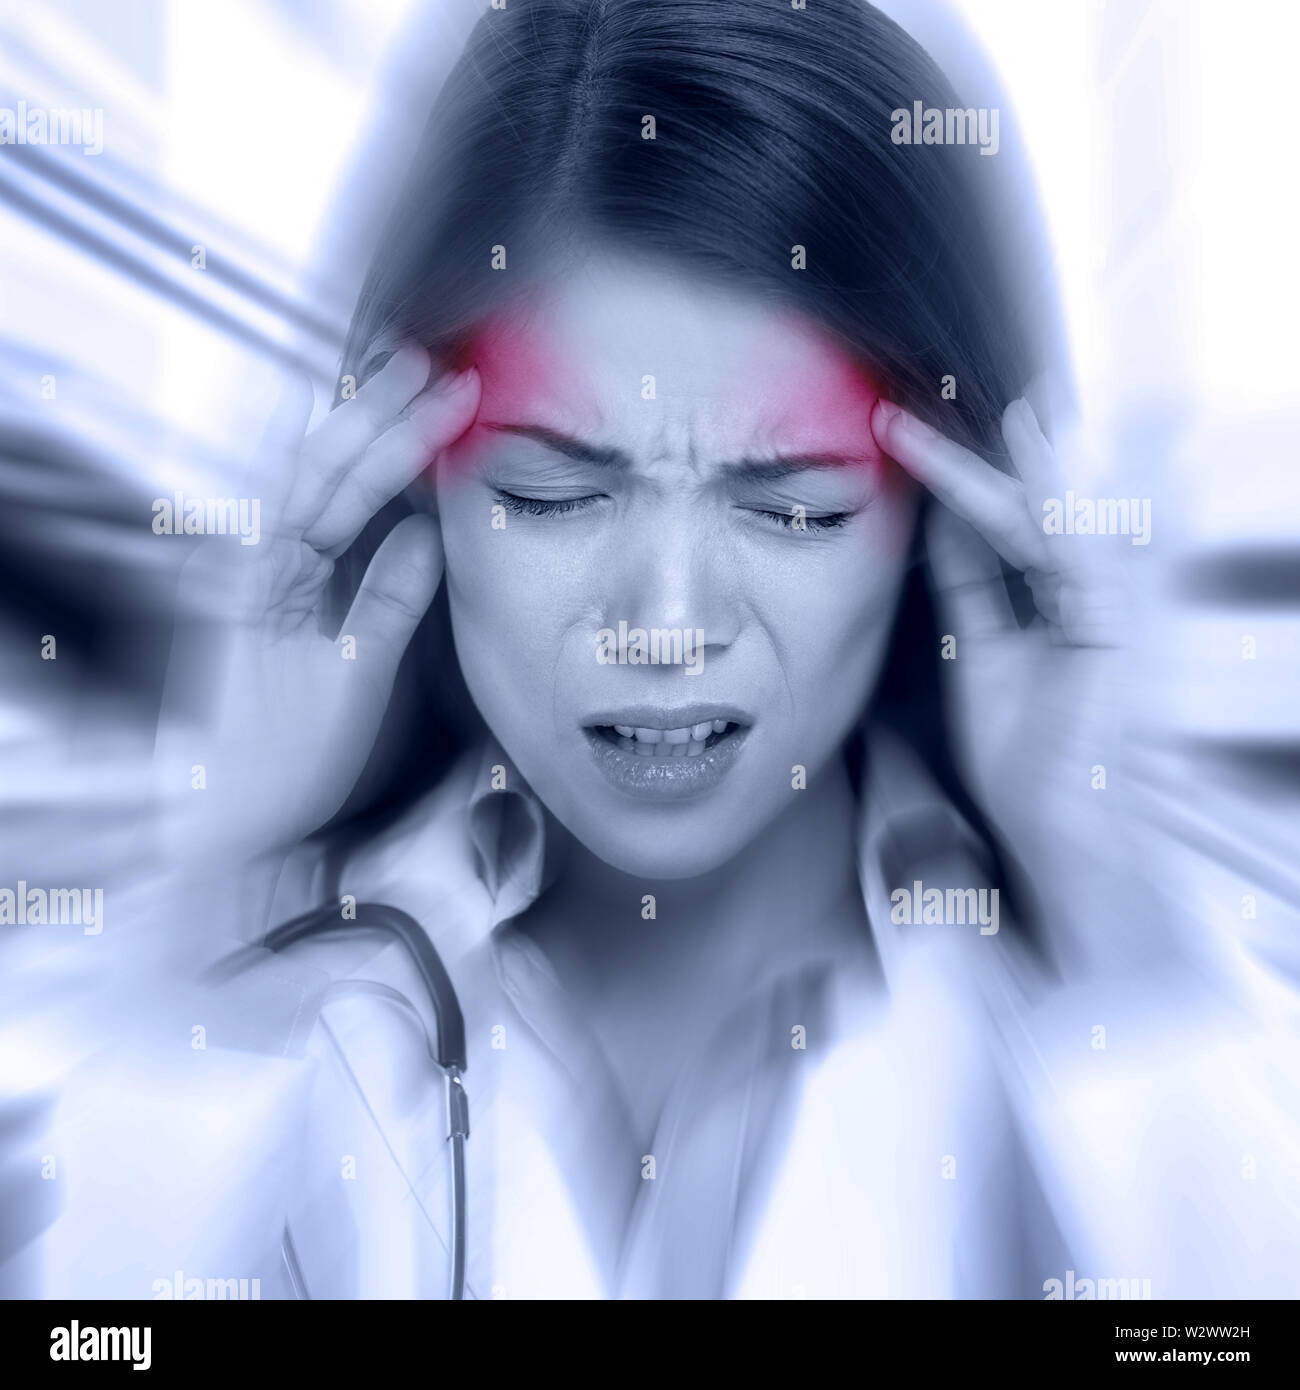 Junge Frau mit einem hämmernden Kopfschmerzen oder Migräne ständigen umklammerte ihre Tempel mit einem Ausdruck des Schmerzes, monochromes Bild mit selektiven rote Farbe zu Tempeln und blur Effekt um ihr Gesicht Stockfoto